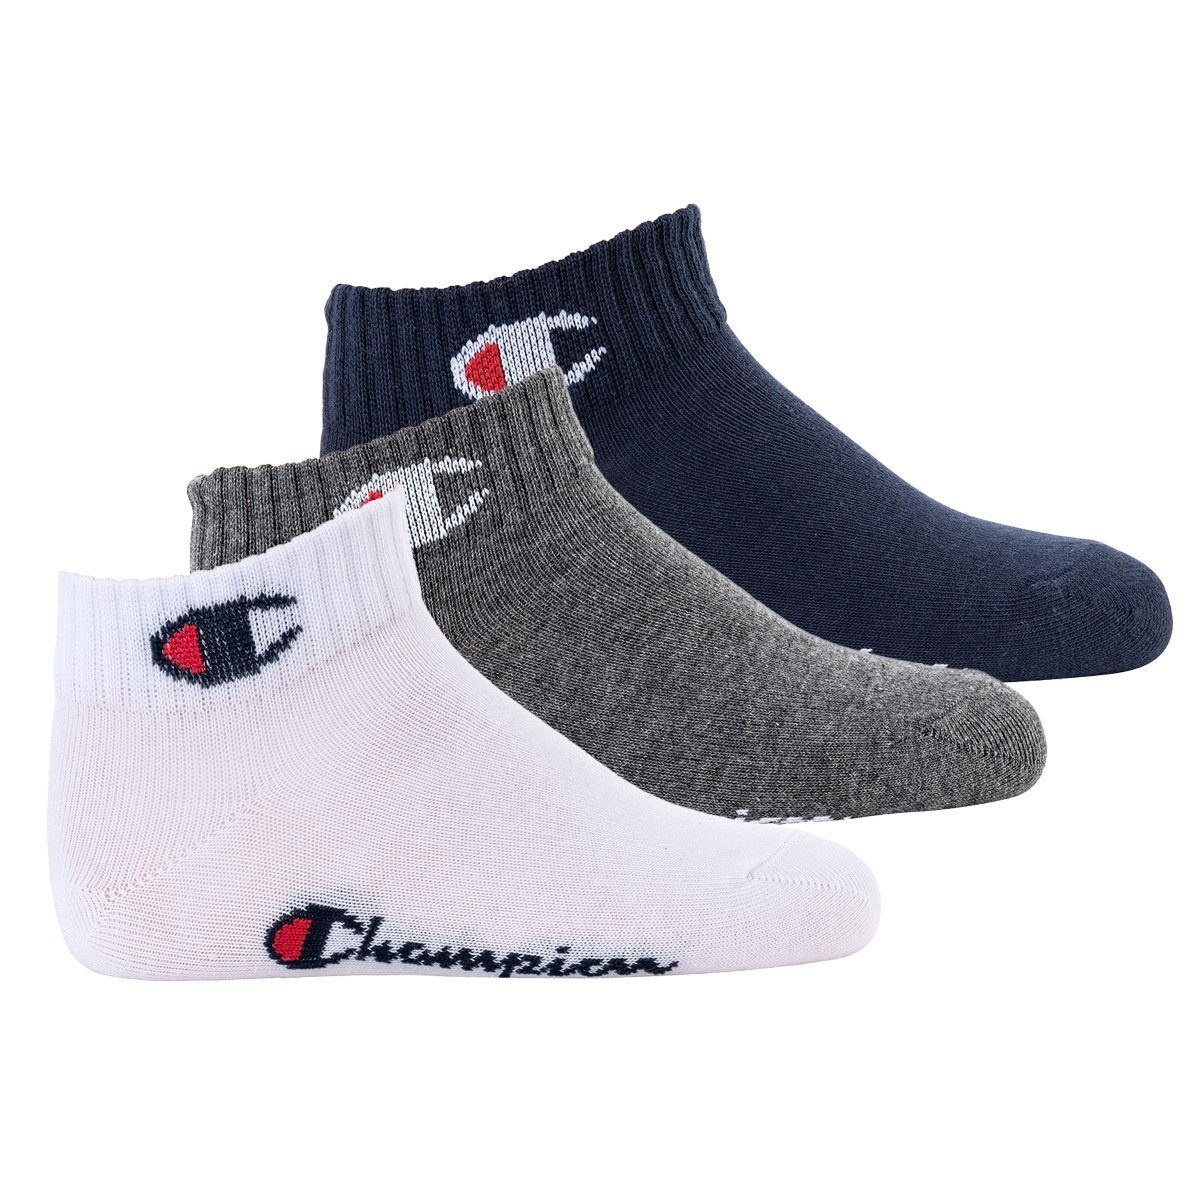 Champion Freizeitsocken Kinder Socken, 3er Pack- einfarbig Quarter, Blau/Weiß/Grau